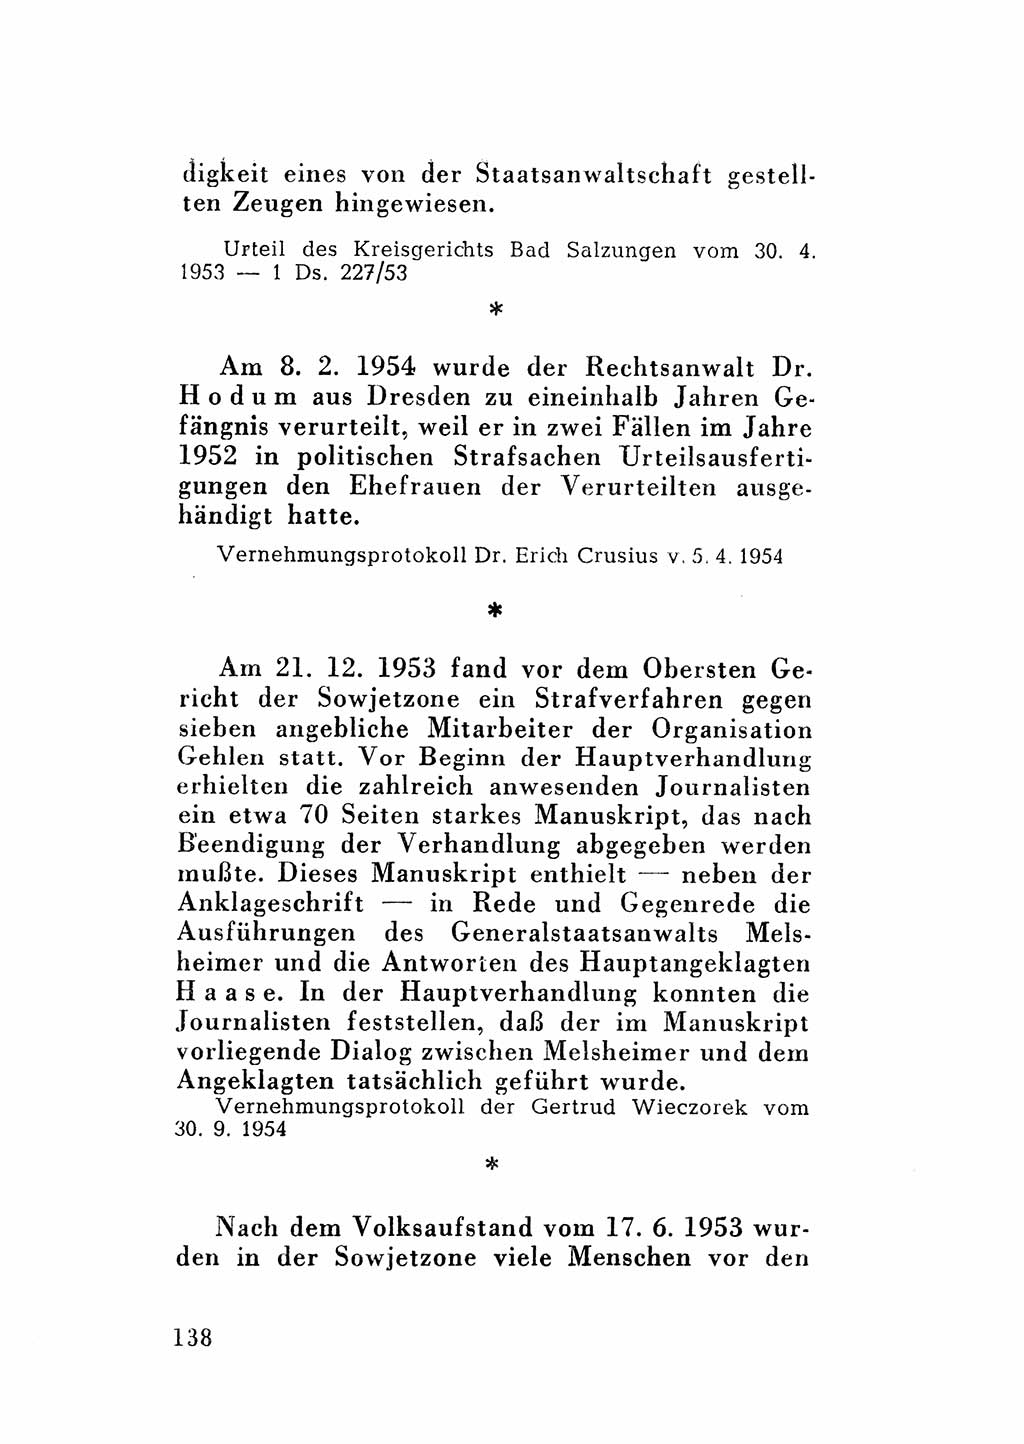 Katalog des Unrechts, Untersuchungsausschuß Freiheitlicher Juristen (UfJ) [Bundesrepublik Deutschland (BRD)] 1956, Seite 138 (Kat. UnR. UfJ BRD 1956, S. 138)